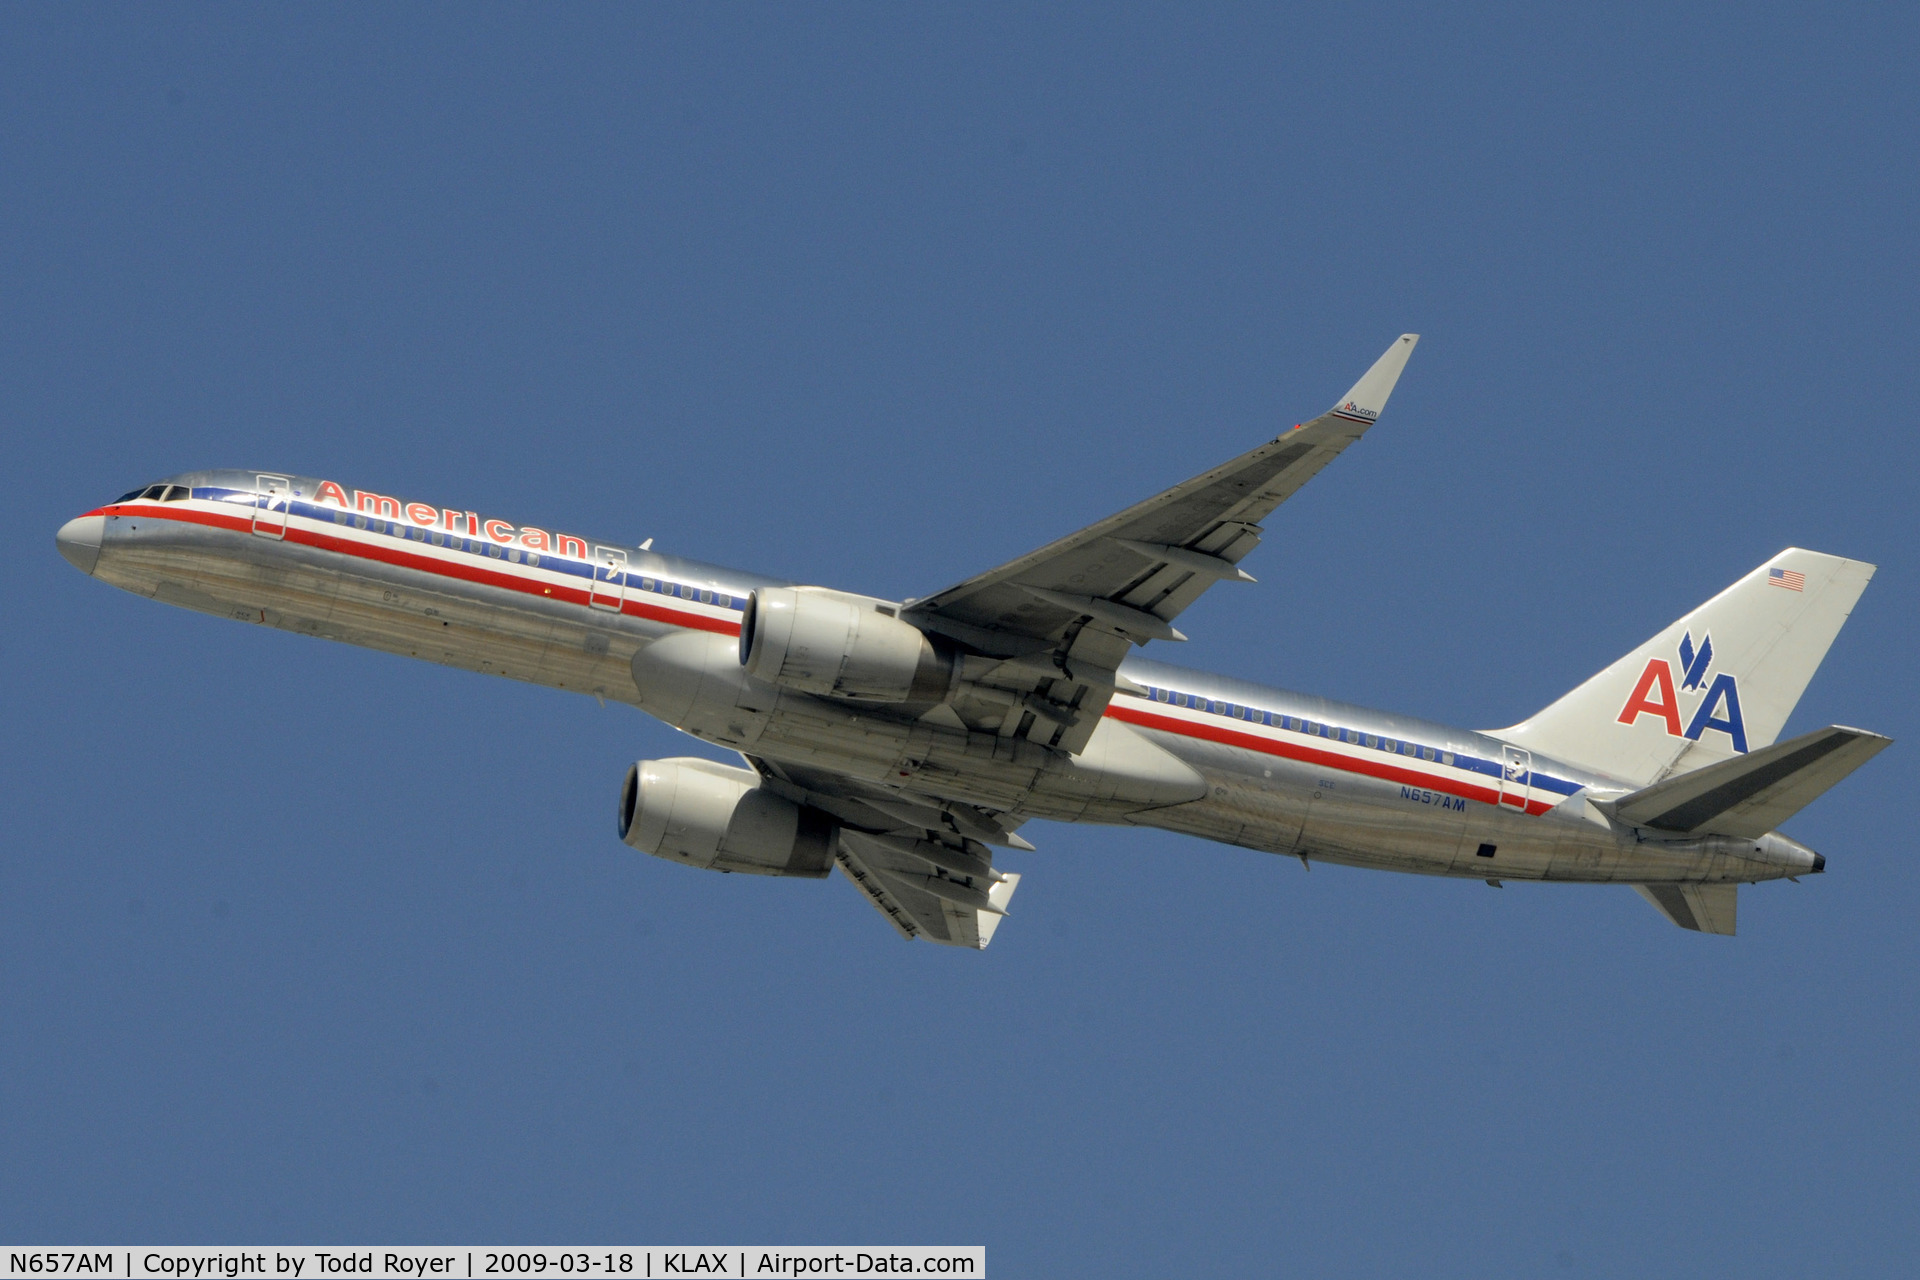 N657AM, 1991 Boeing 757-223 C/N 24615, Departing LAX on 25R